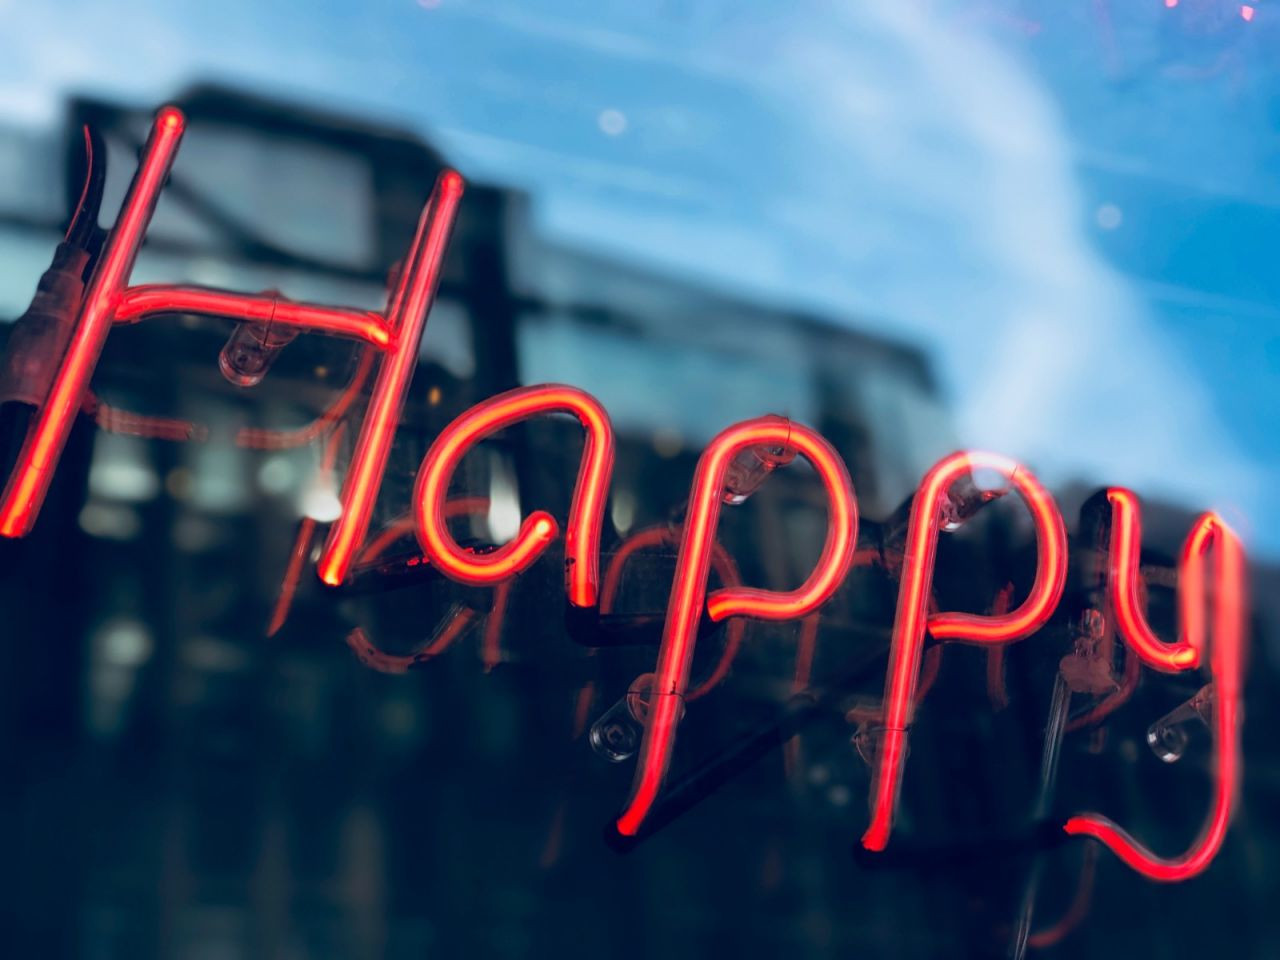 Mutluluğun sırrı: Yüksek ve düşük beklentiler başarıyı nasıl etkiliyor? - Sayfa 4